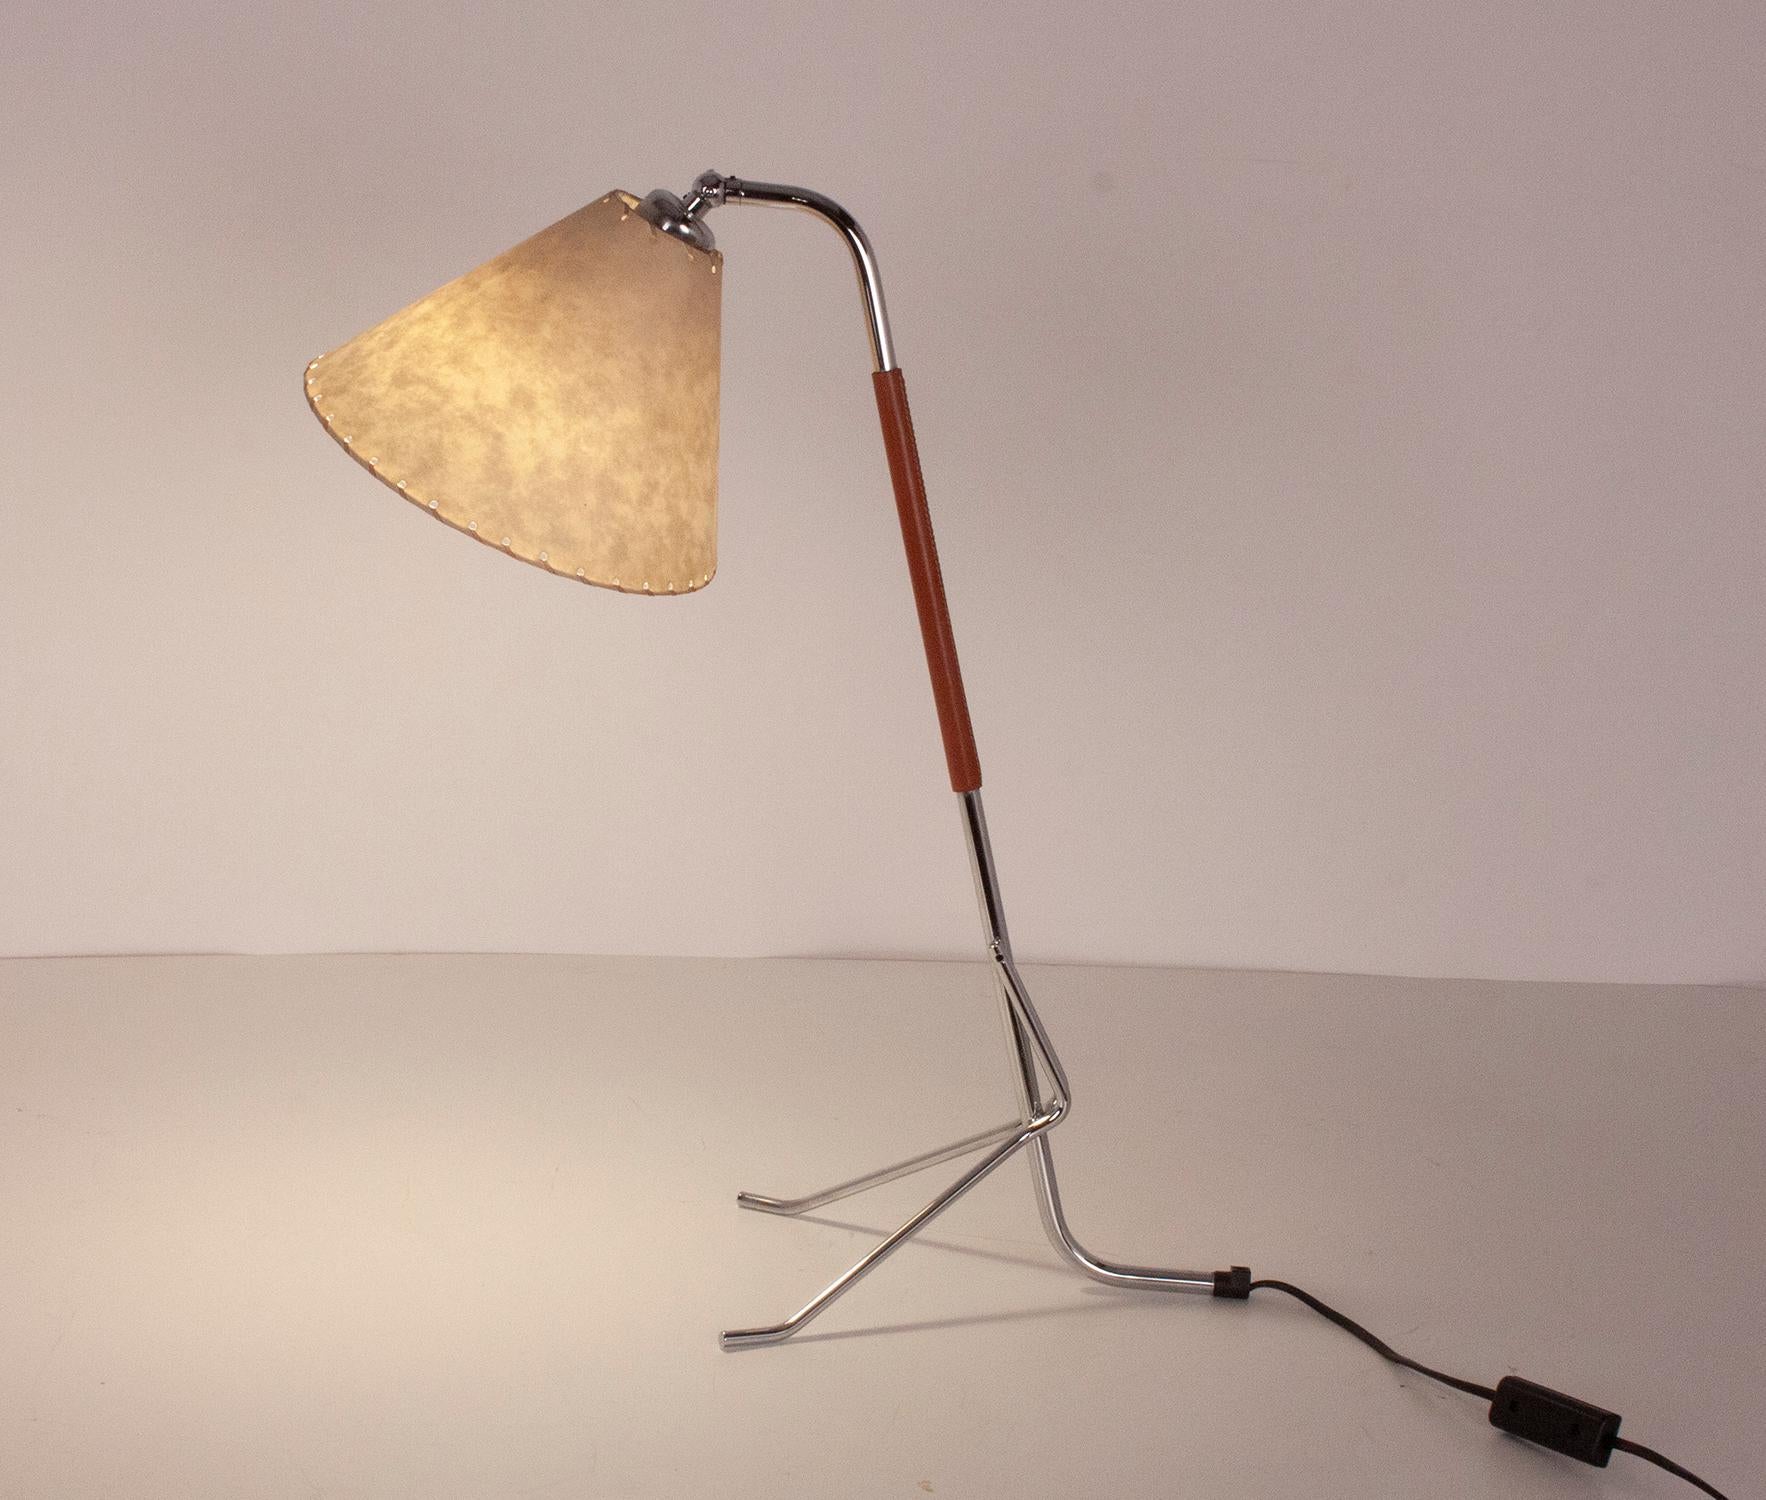 Spanish Tripod Desk Lamp, designed by Pete Sans, Spain 1990's